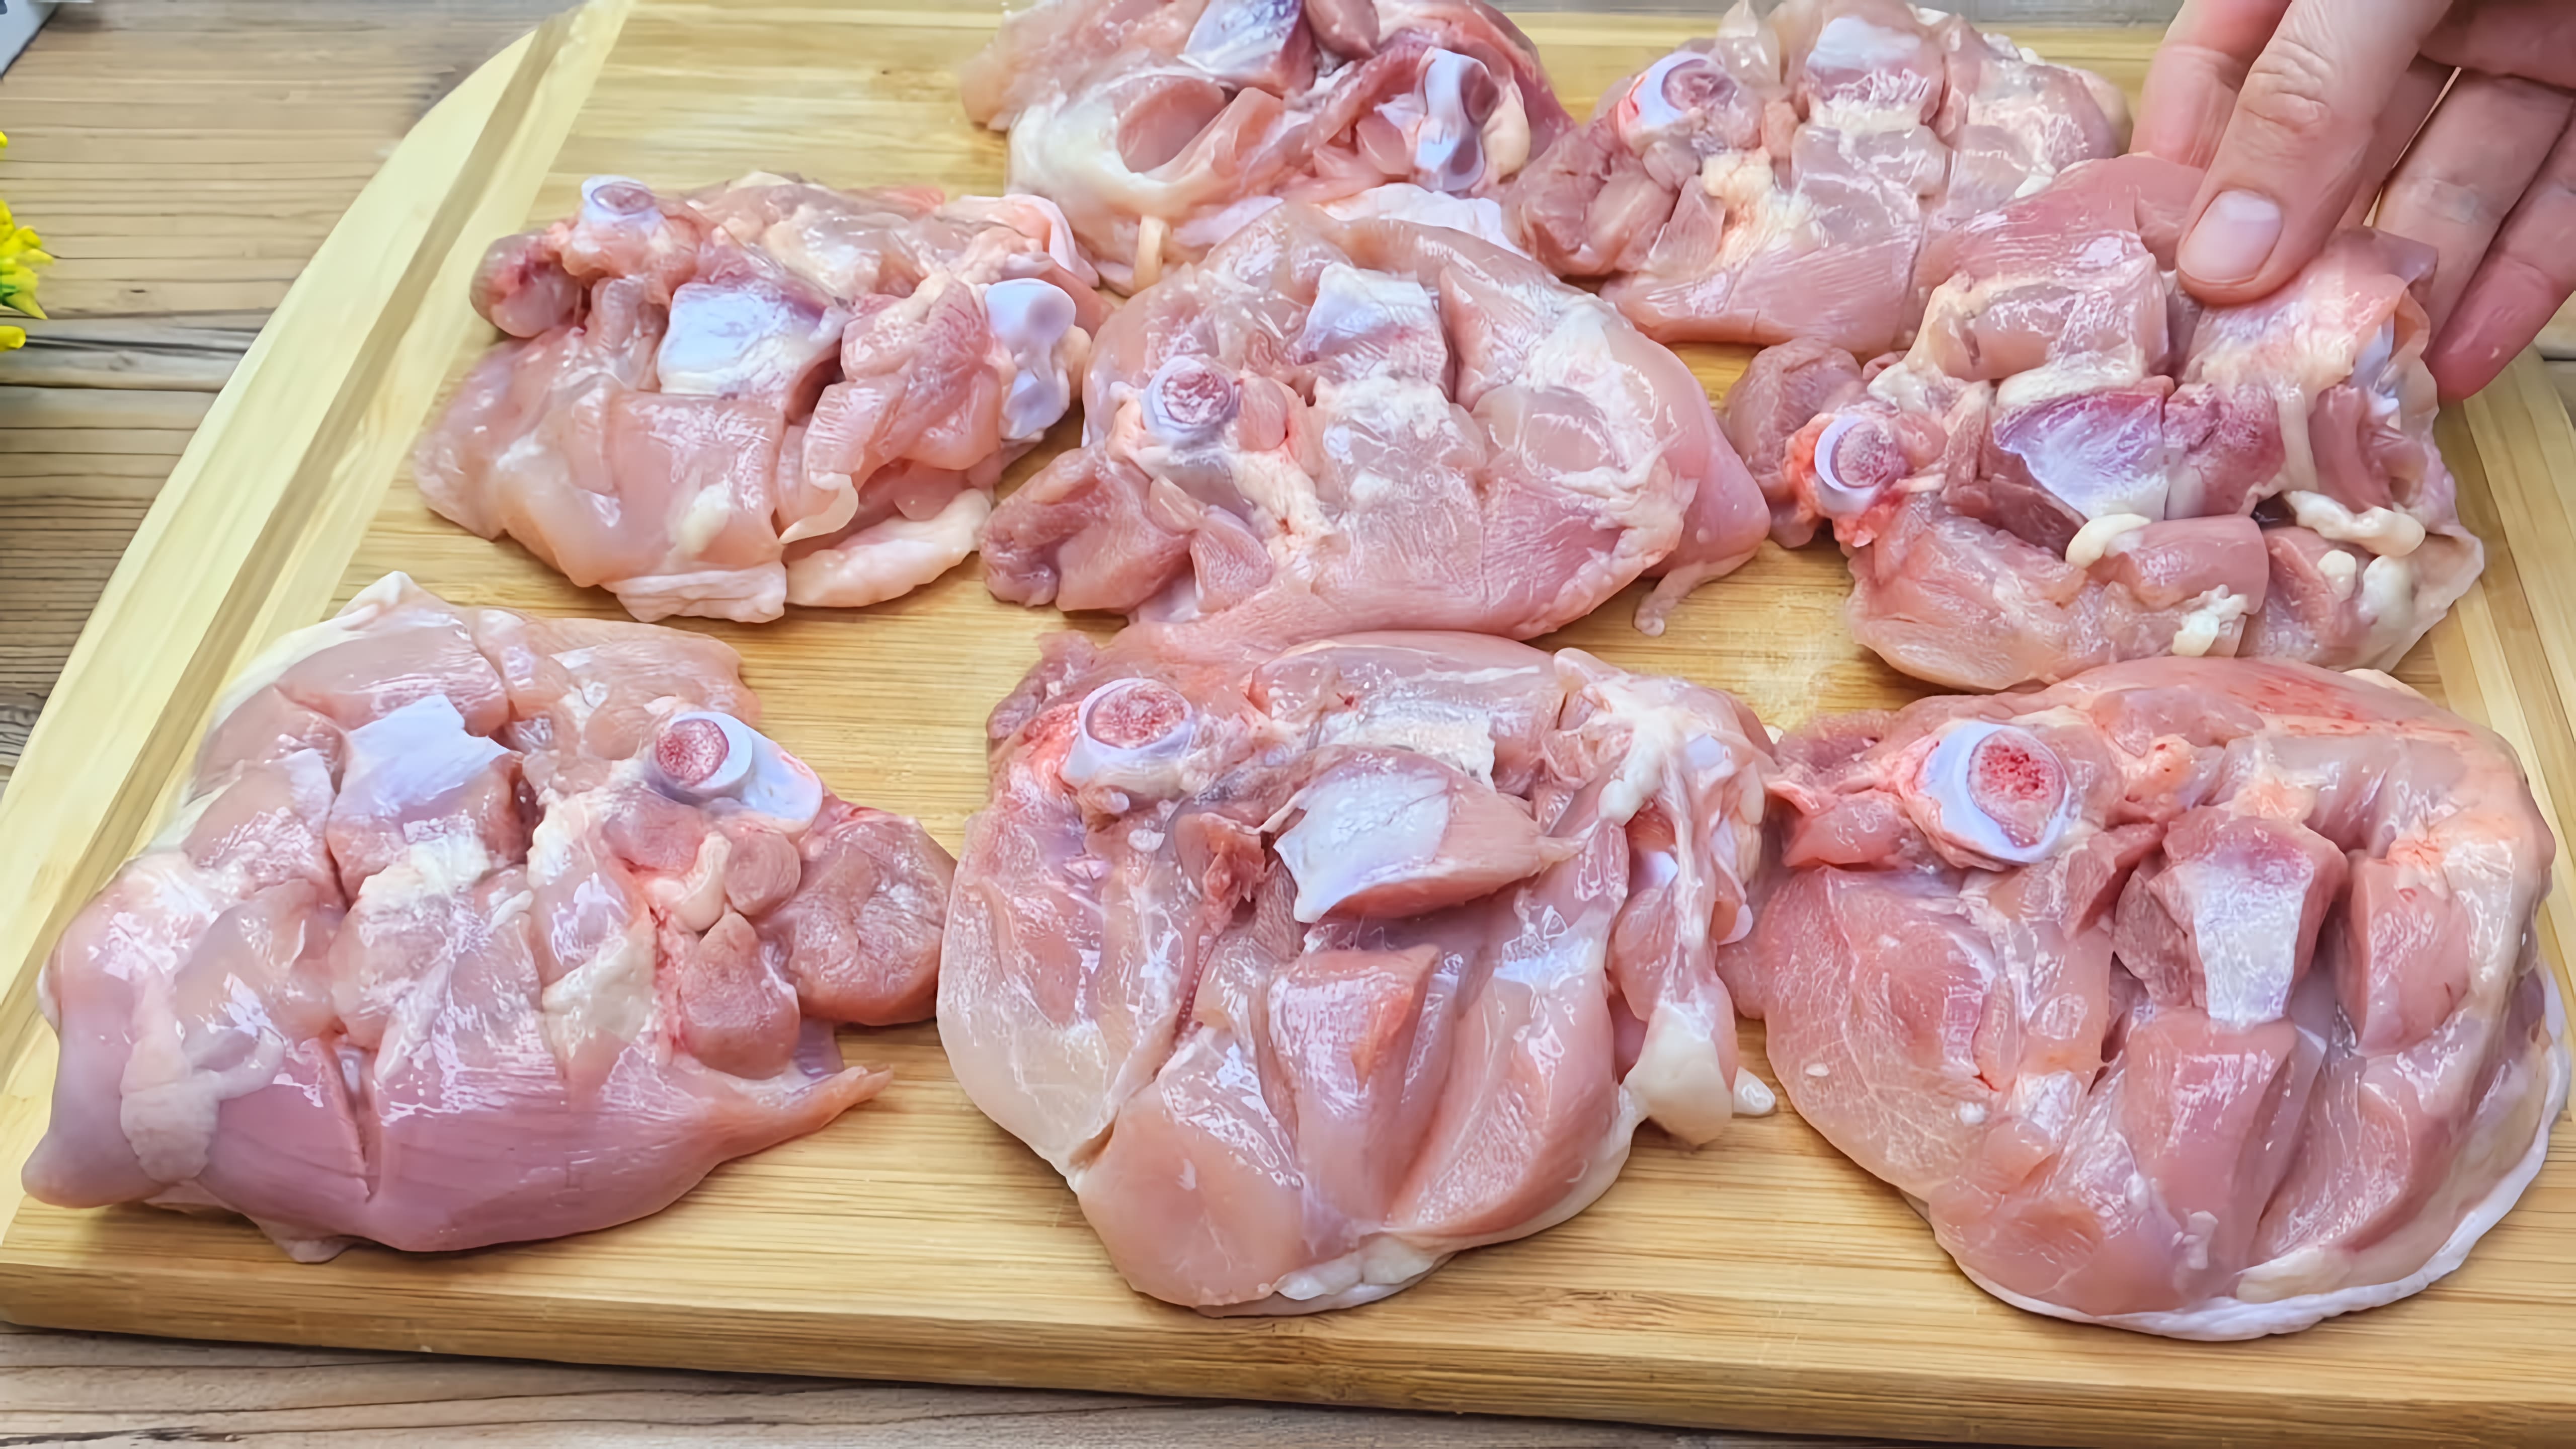 Видео: Подруга научила меня так вкусно готовить куриные бедра, теперь готовлю почти каждый день. Рецепт